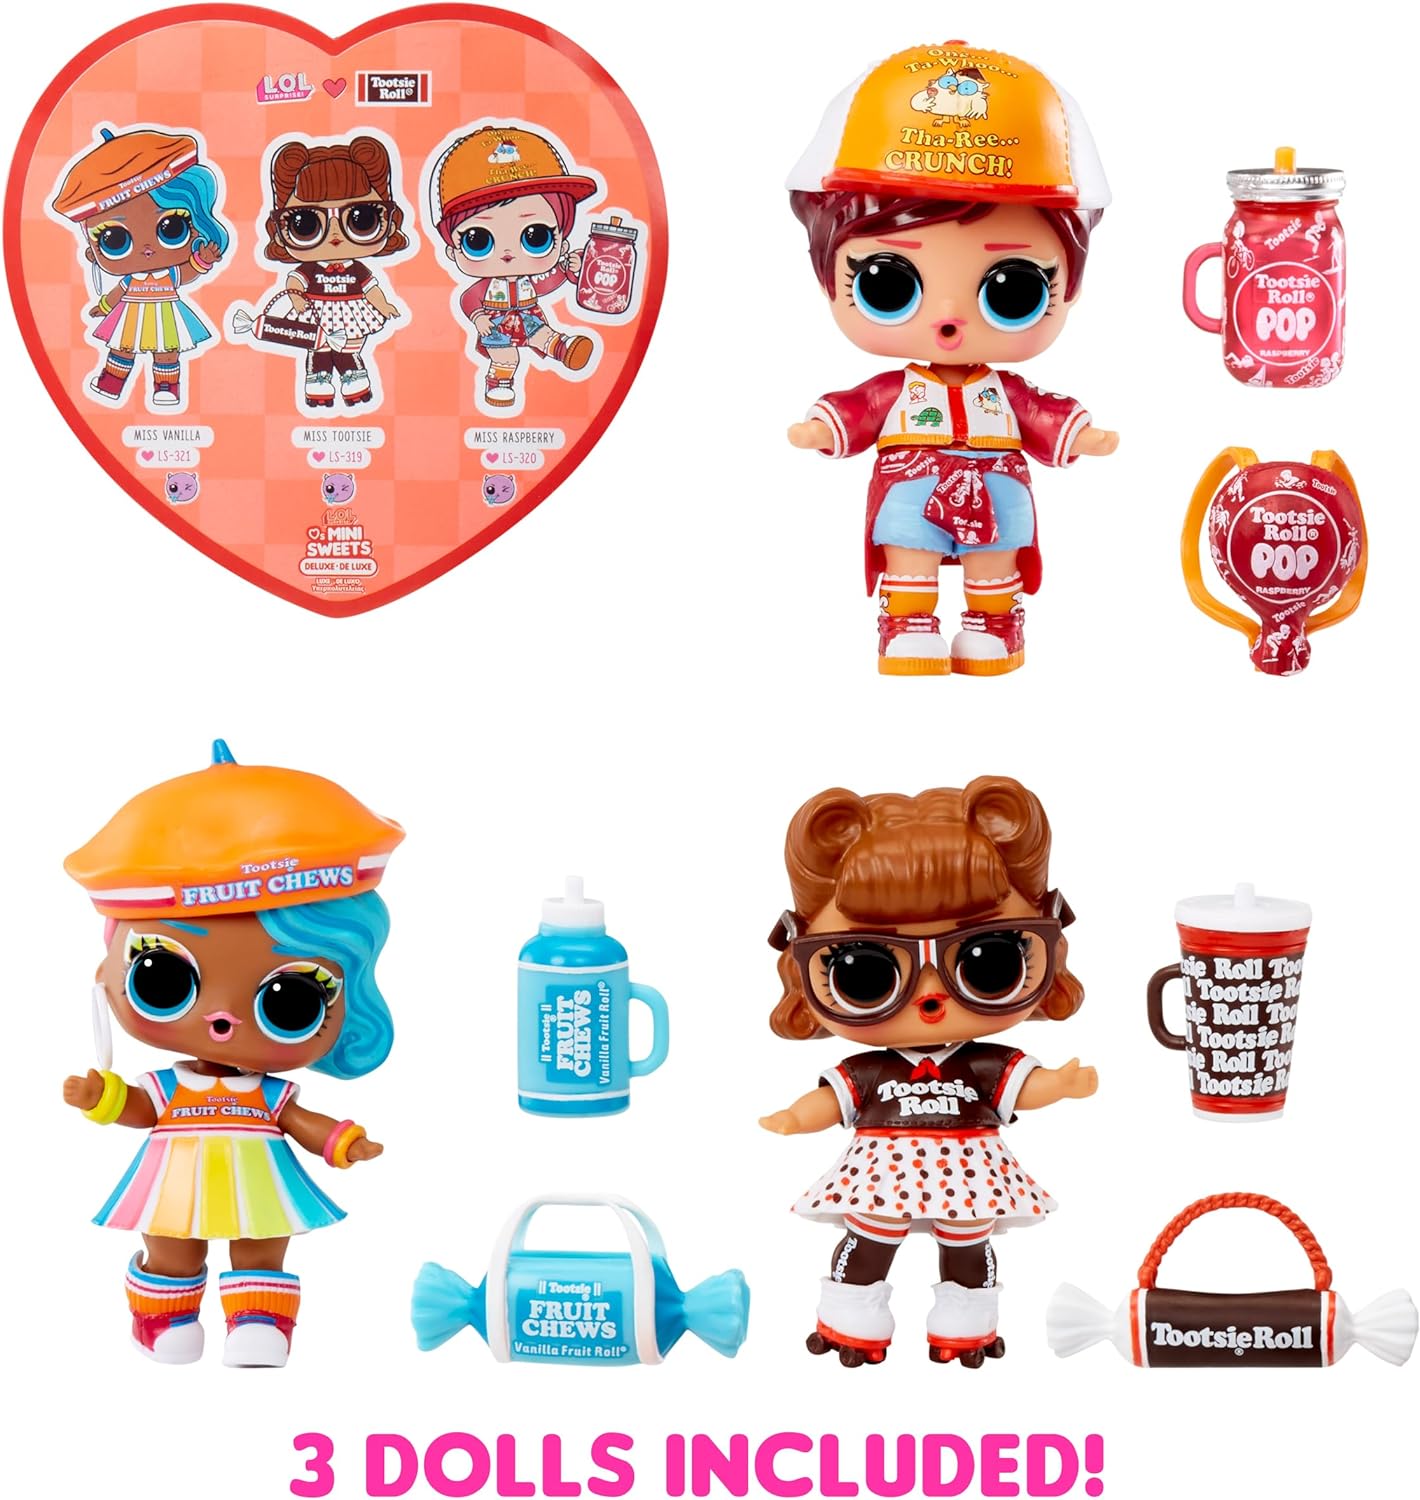 L.O.L. Surprise! Loves Mini Sweets Deluxe Series 3 - TOOTSIE - Inclui 3 bonecos com tema de doces de edição limitada, acessórios divertidos e surpresa de água - Bonecos colecionáveis adequados para crianças de 4 anos ou mais